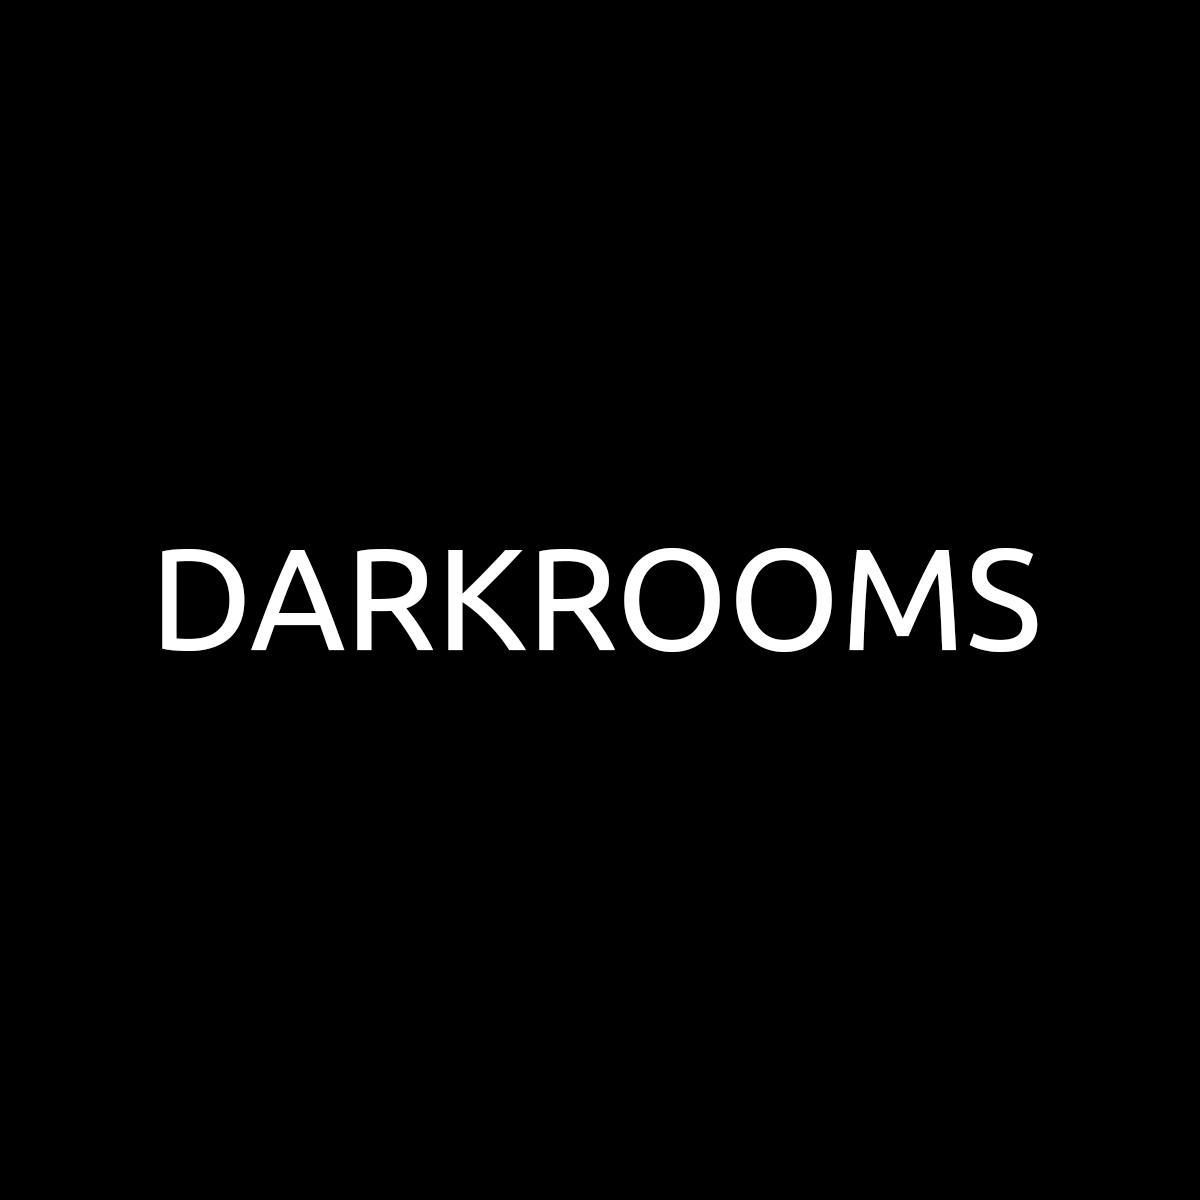 DarkRooms